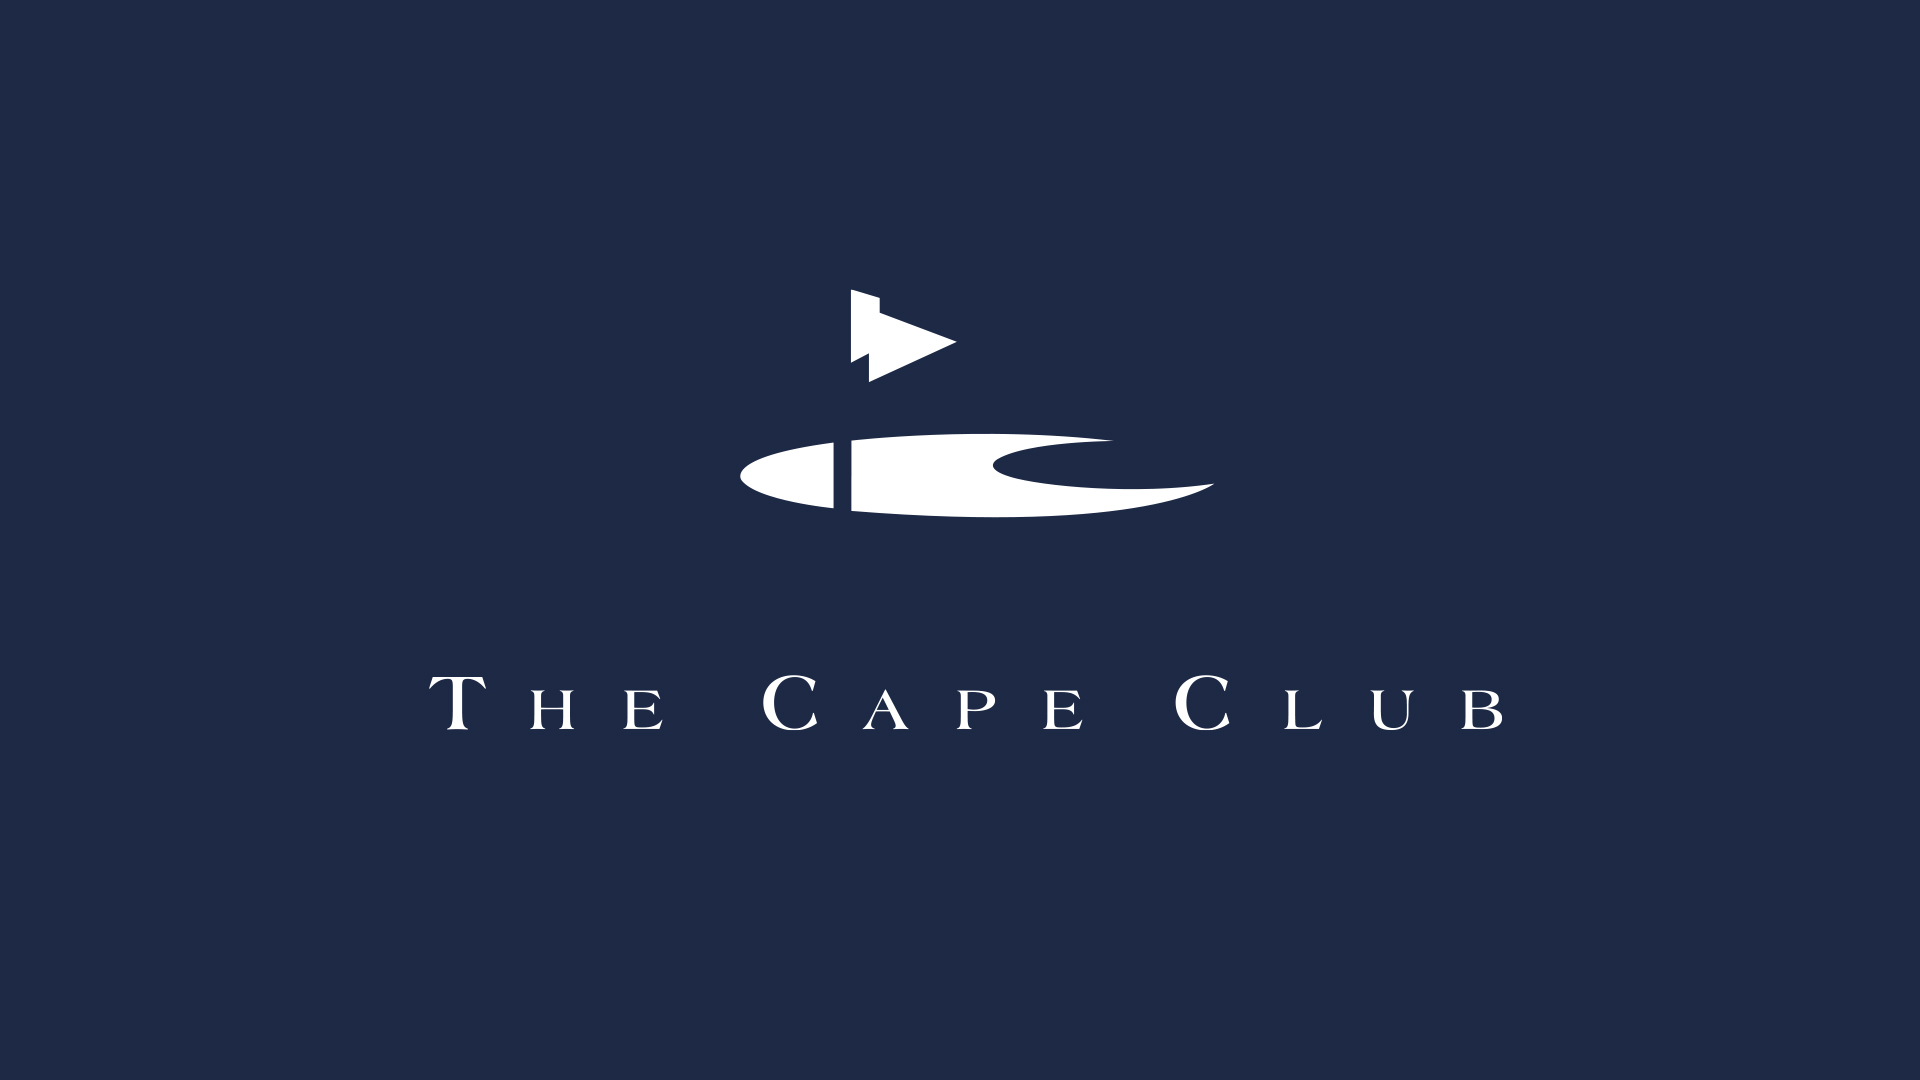 the cape club logo on dark blue